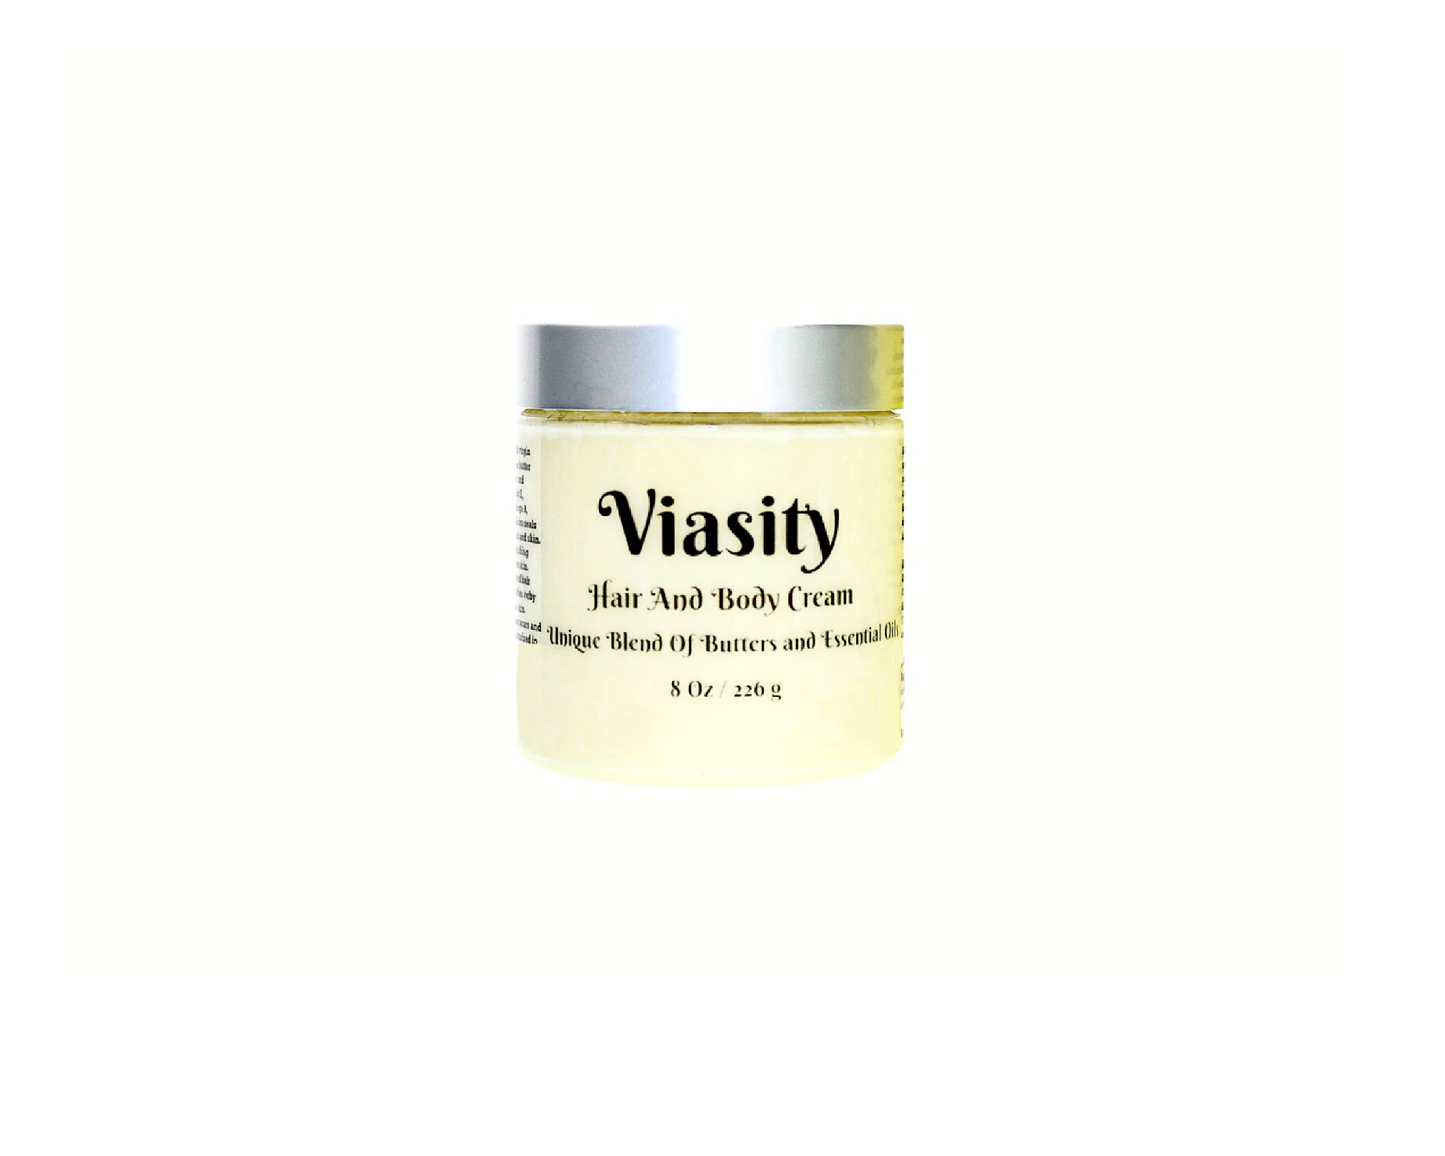 Viasity Hair And Body Cream 8 oz / 226 g